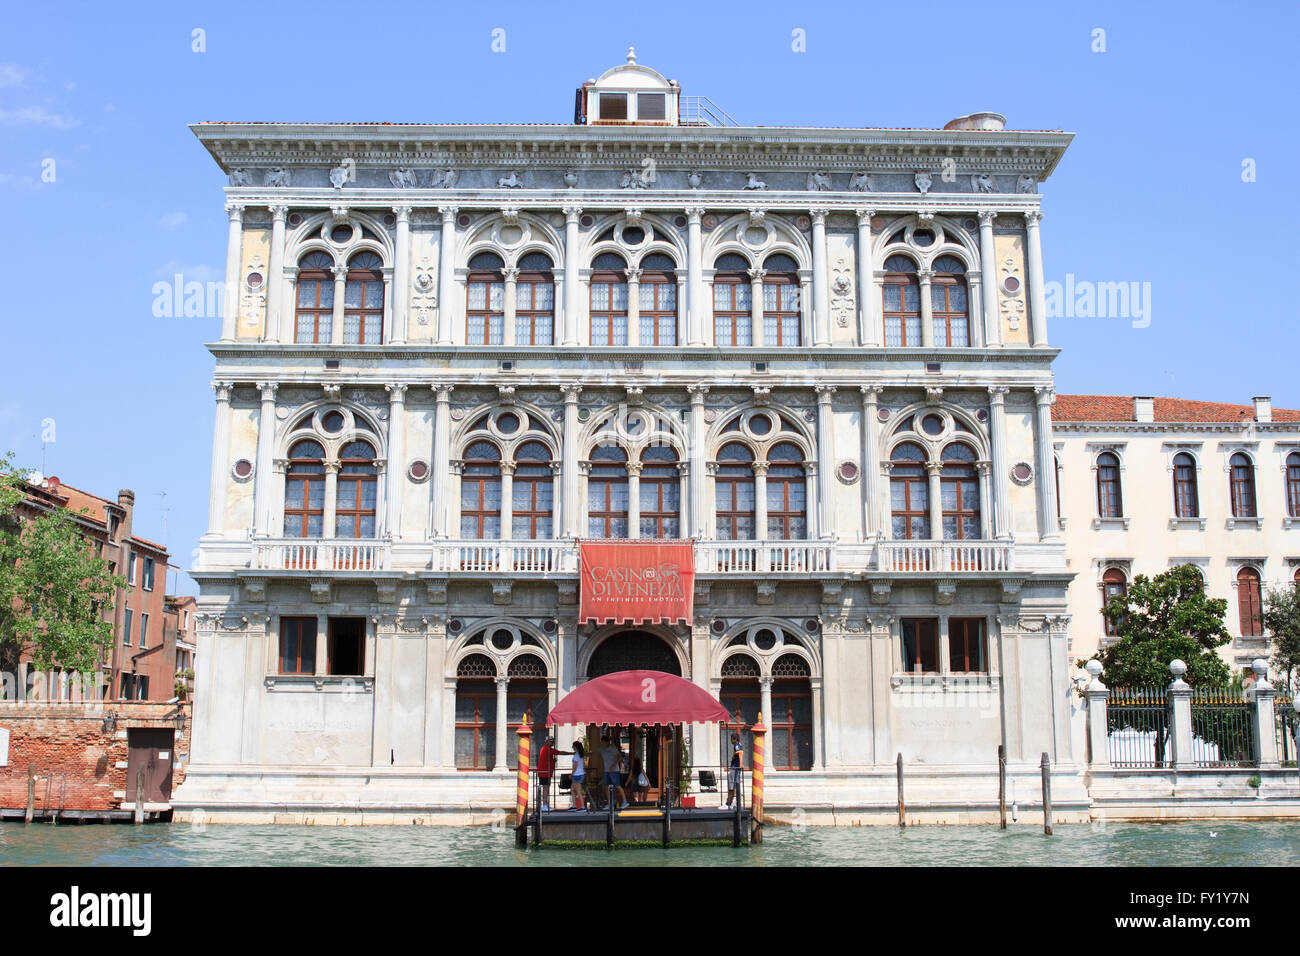 Casino Di Venezia in Venice, Italy Stock Photo - Alamy